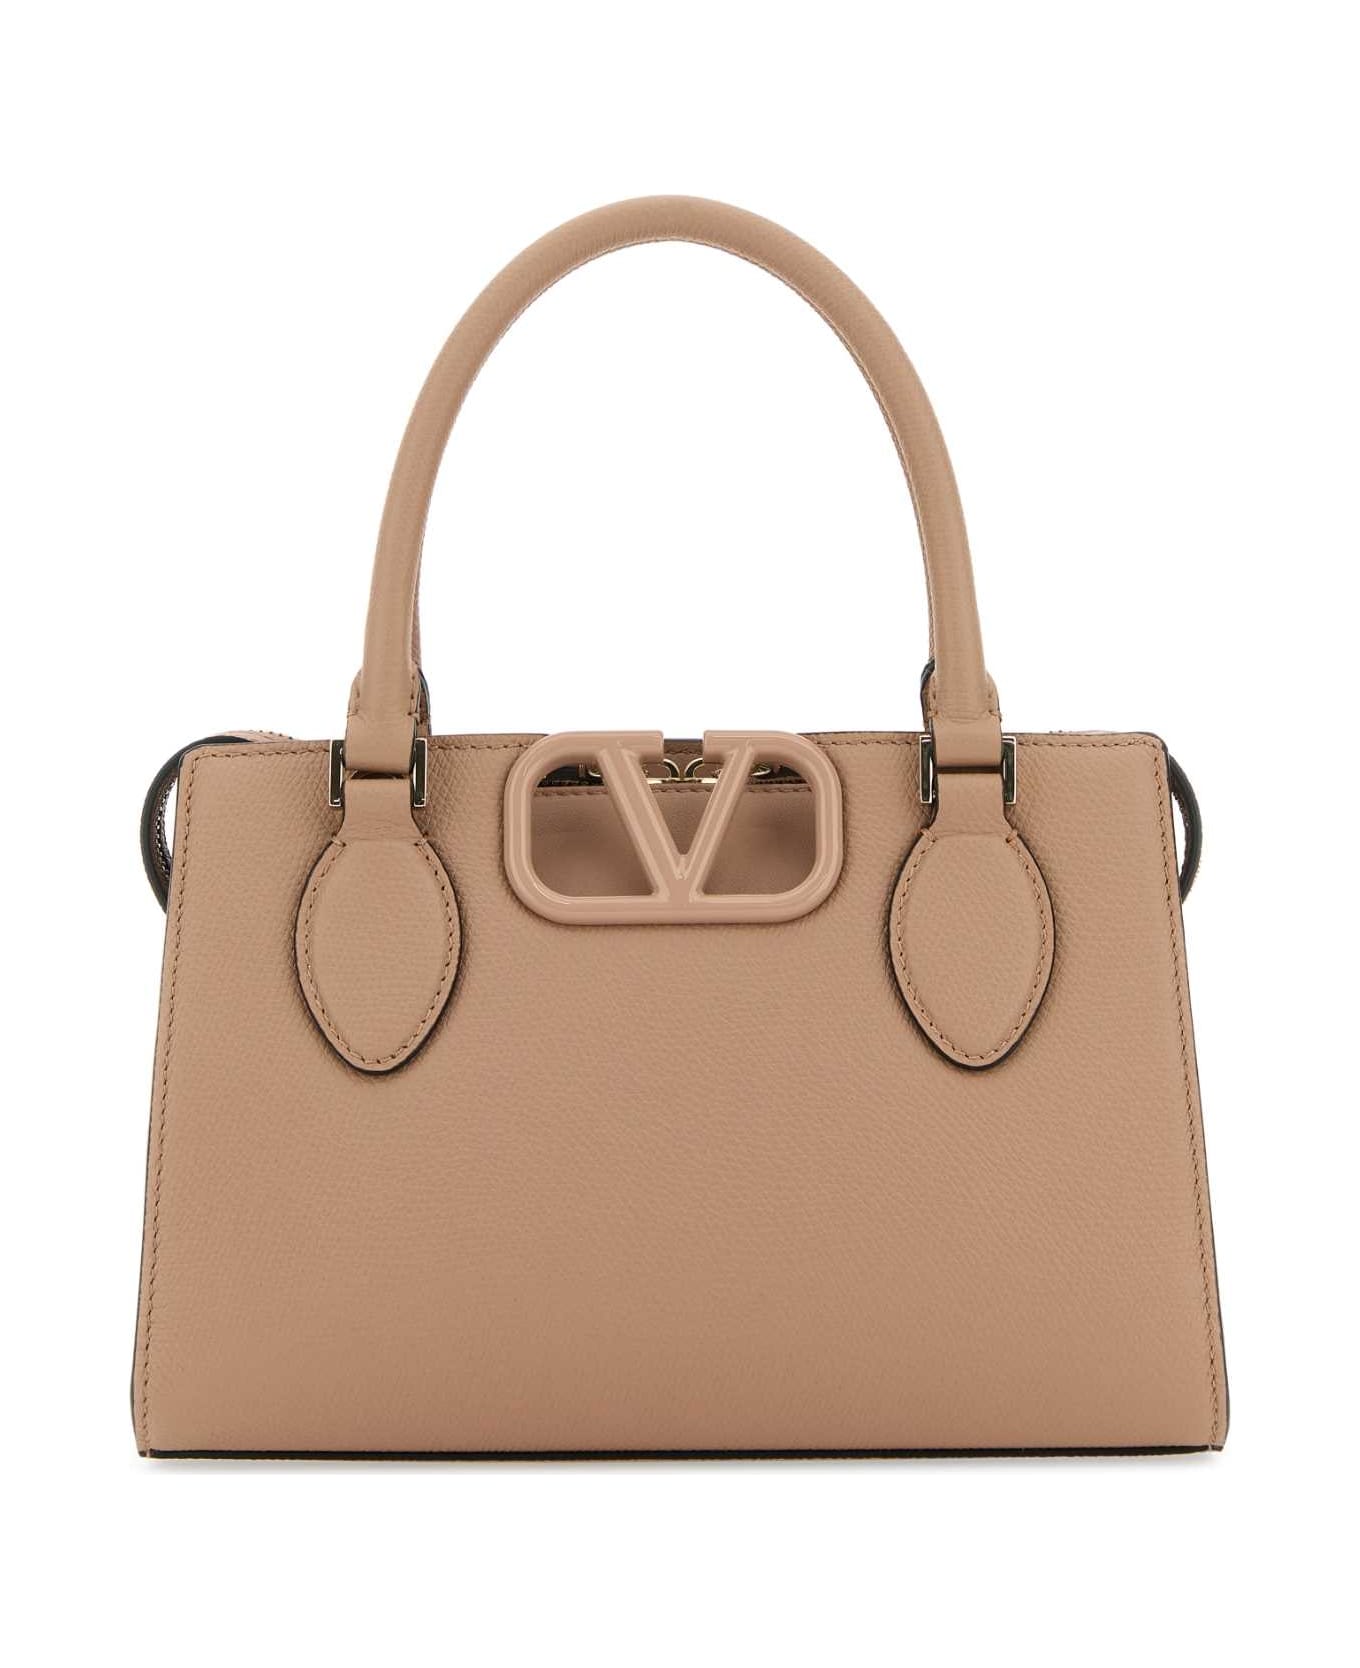 Valentino Garavani Antiqued Pink Leather Vlogo Handbag - ROSECANNELLE